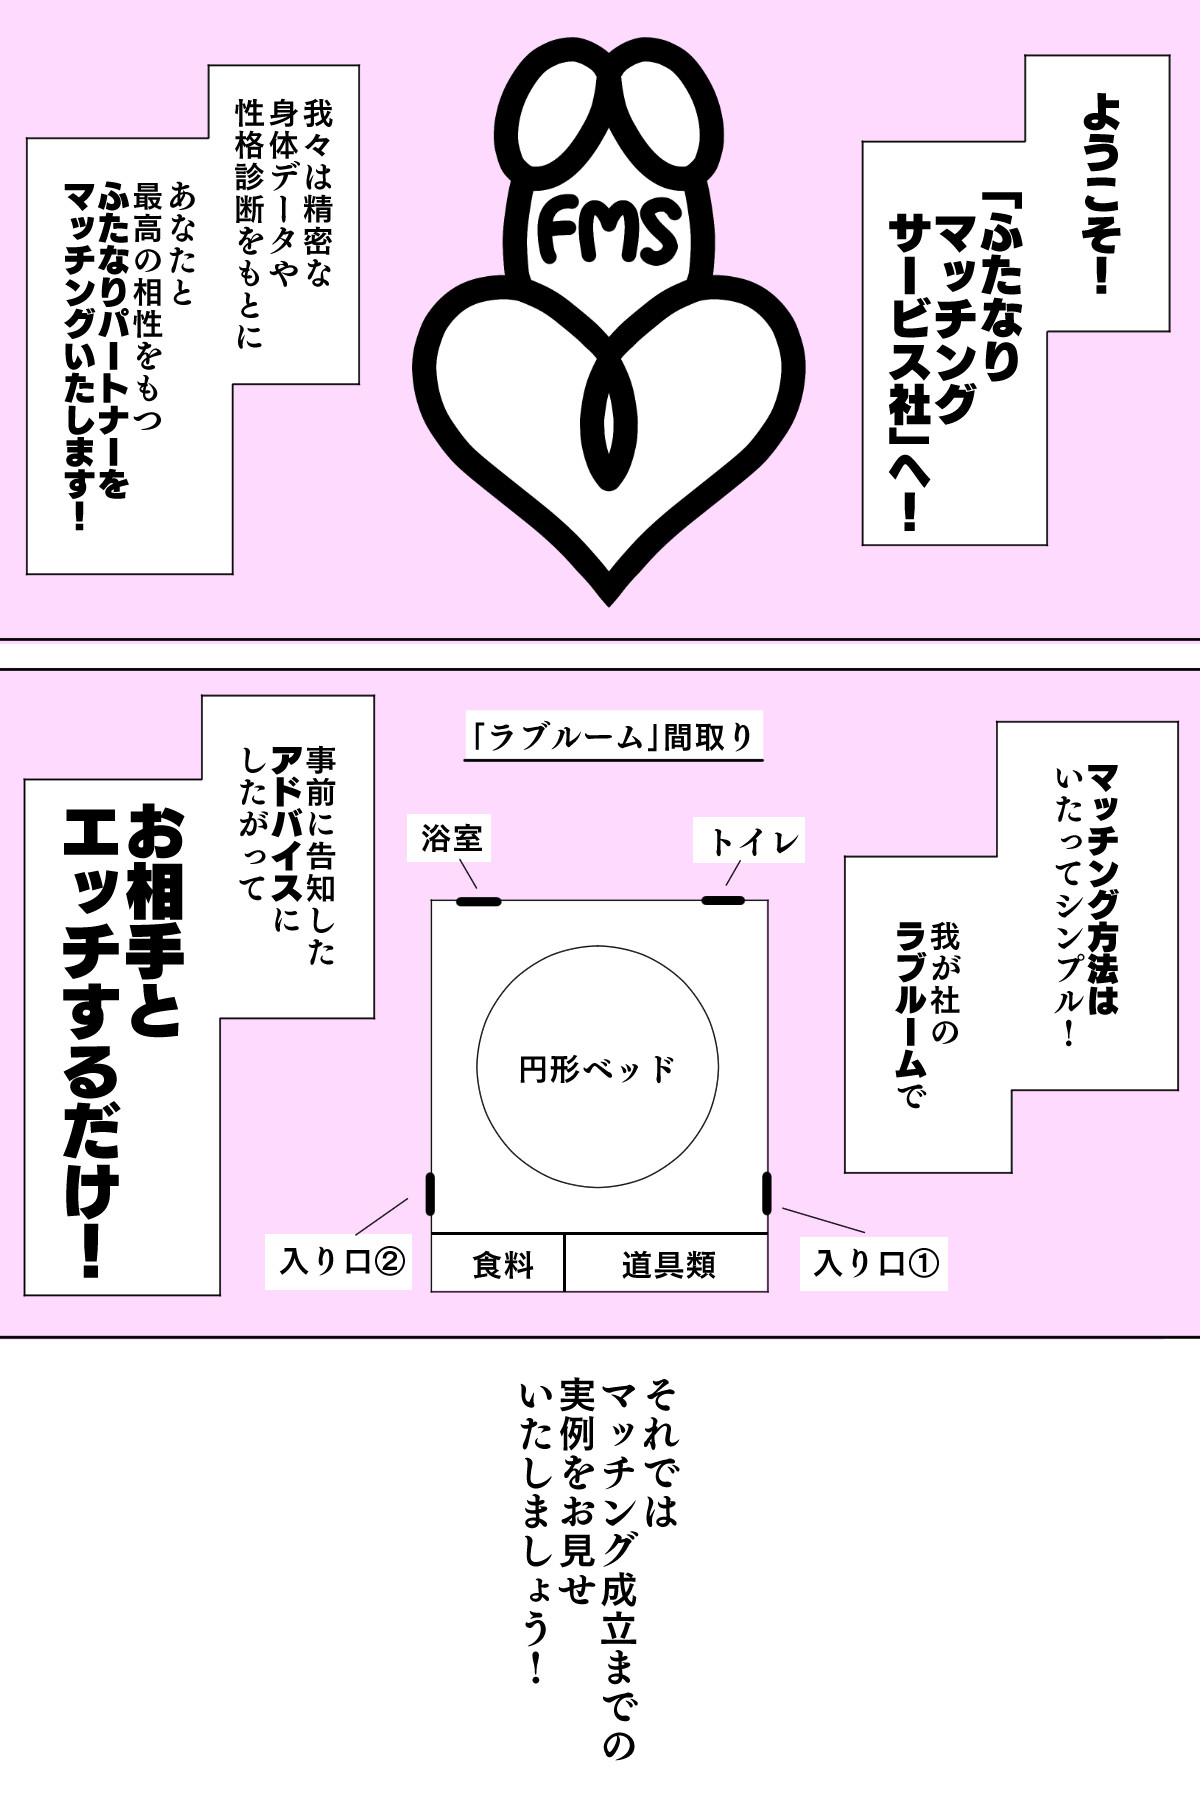 [Muttumuu] Futanari Matching Service page 2 full